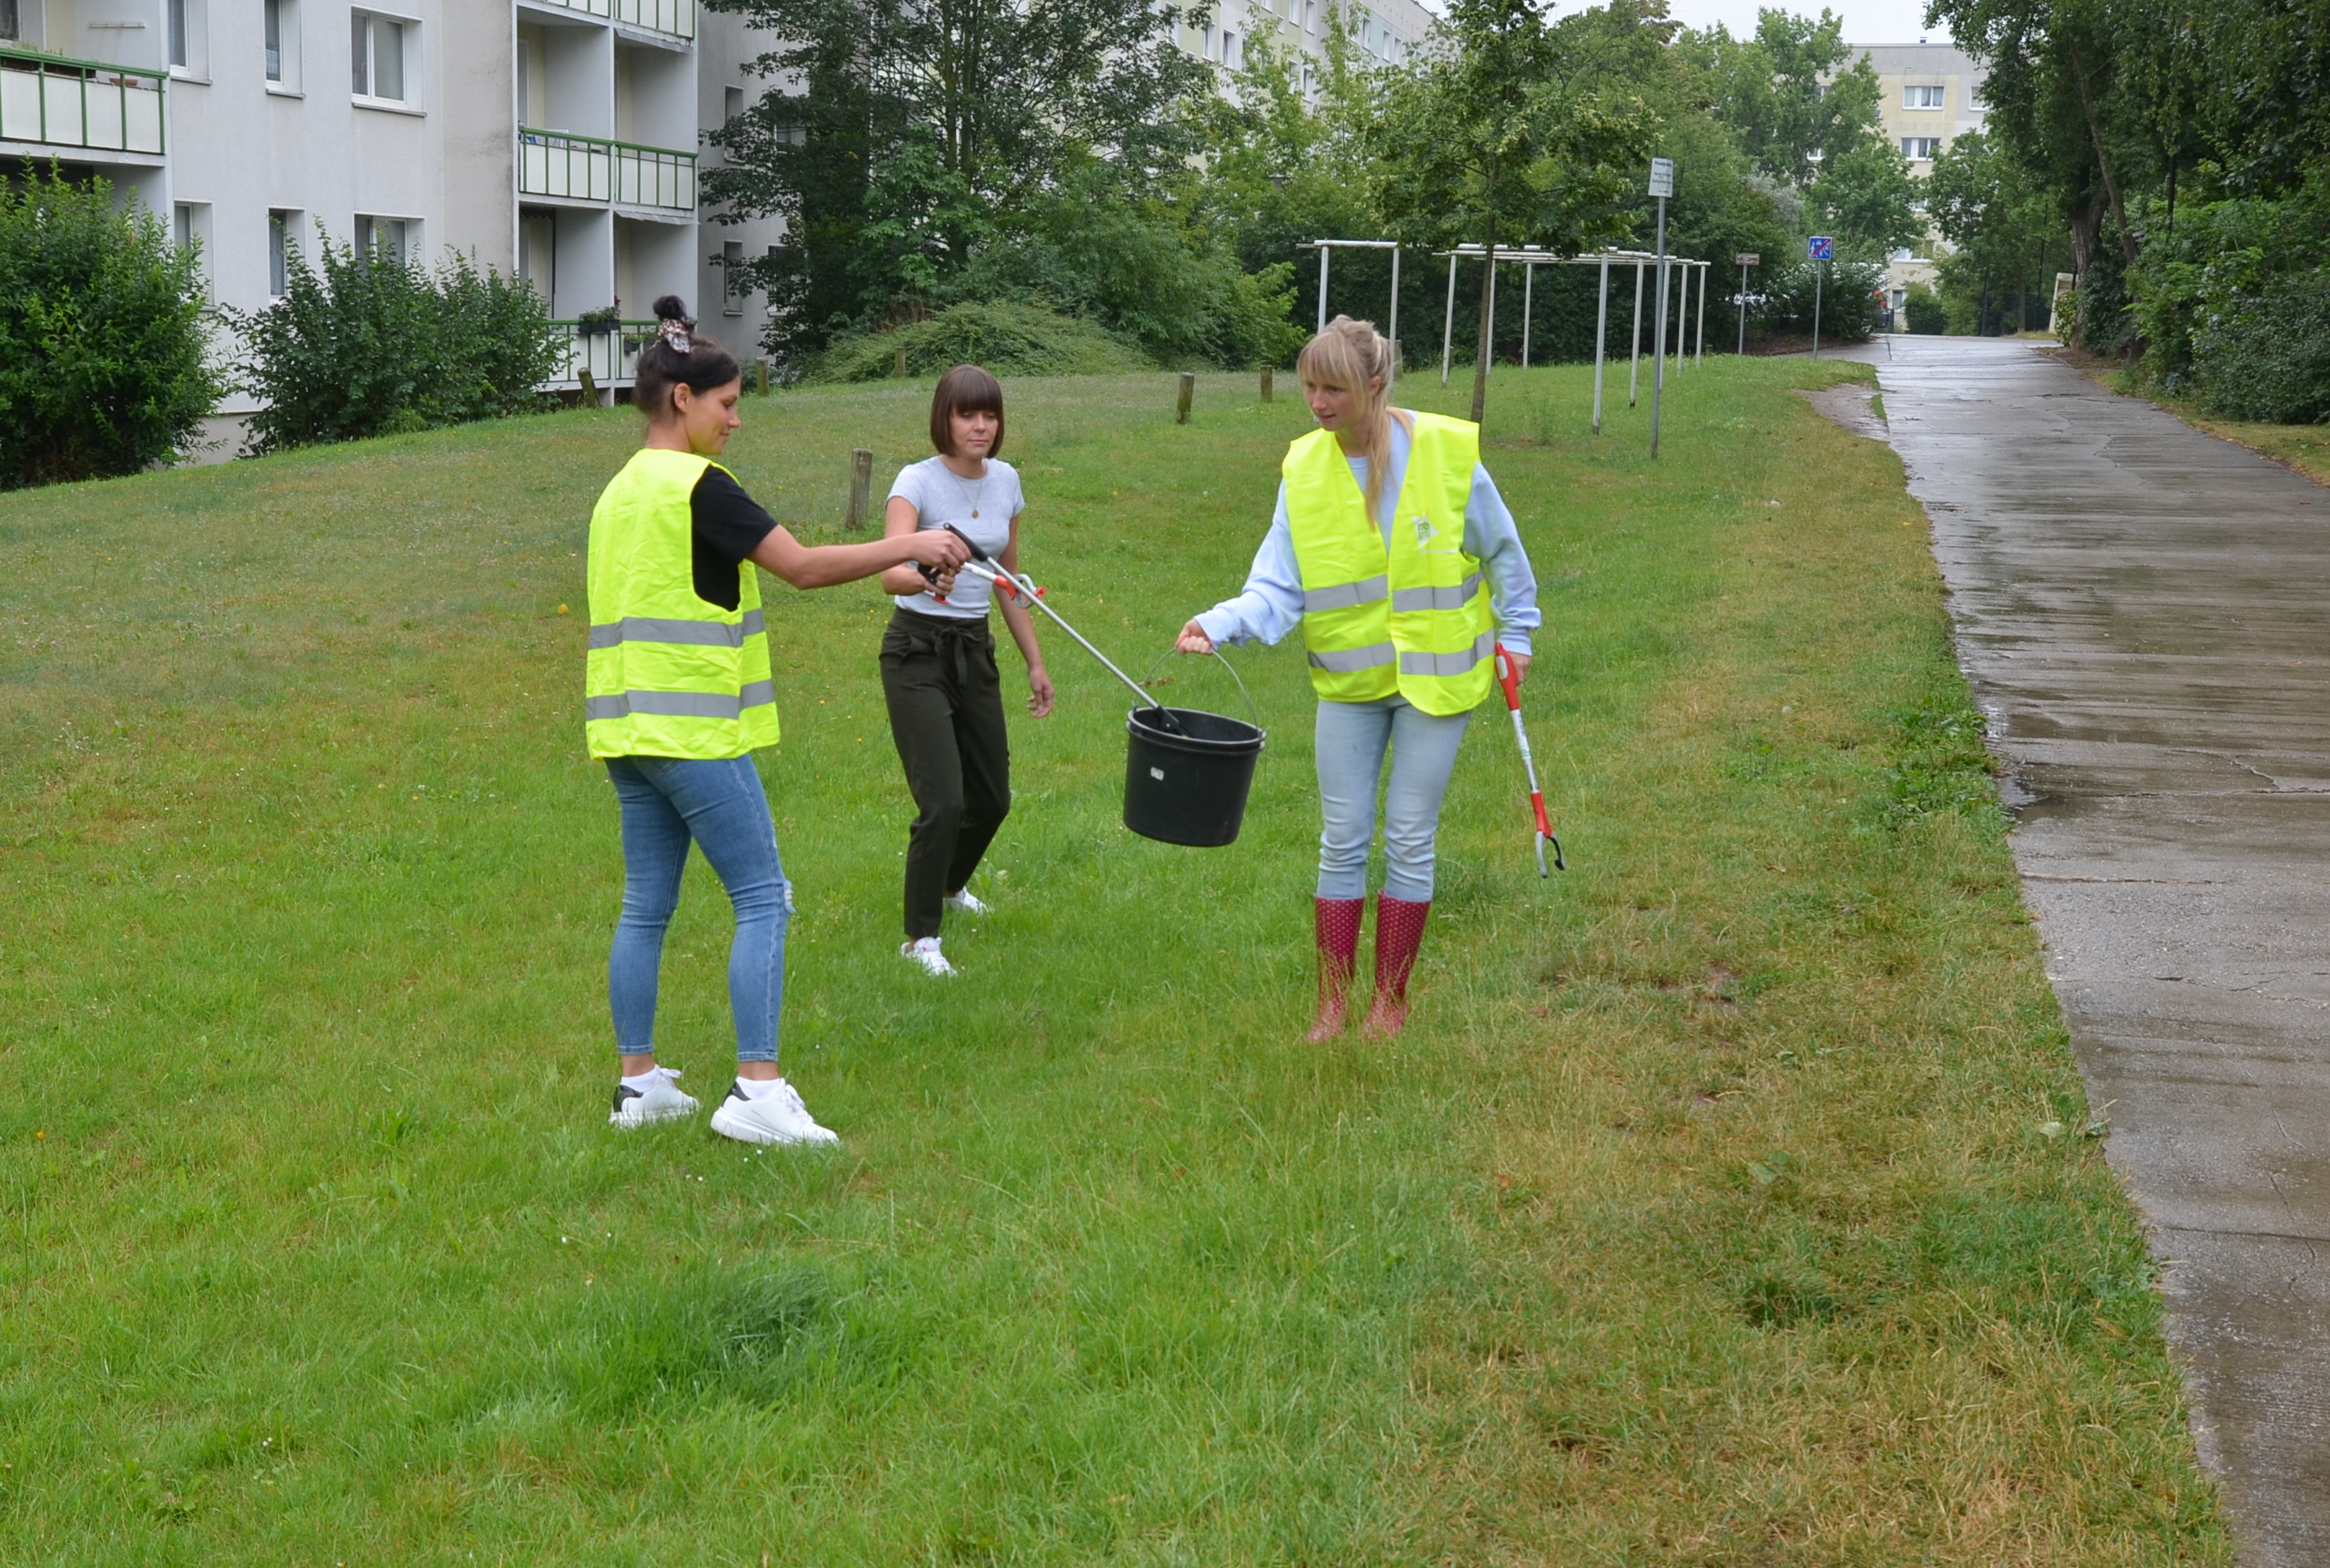 Das Foto zeigt drei Frauen, von denen zwei eine gelbe Warnweste tragen. Sie alle halten Müllgreifer in den Händen und sammeln Müll auf einer grünen Wiese.